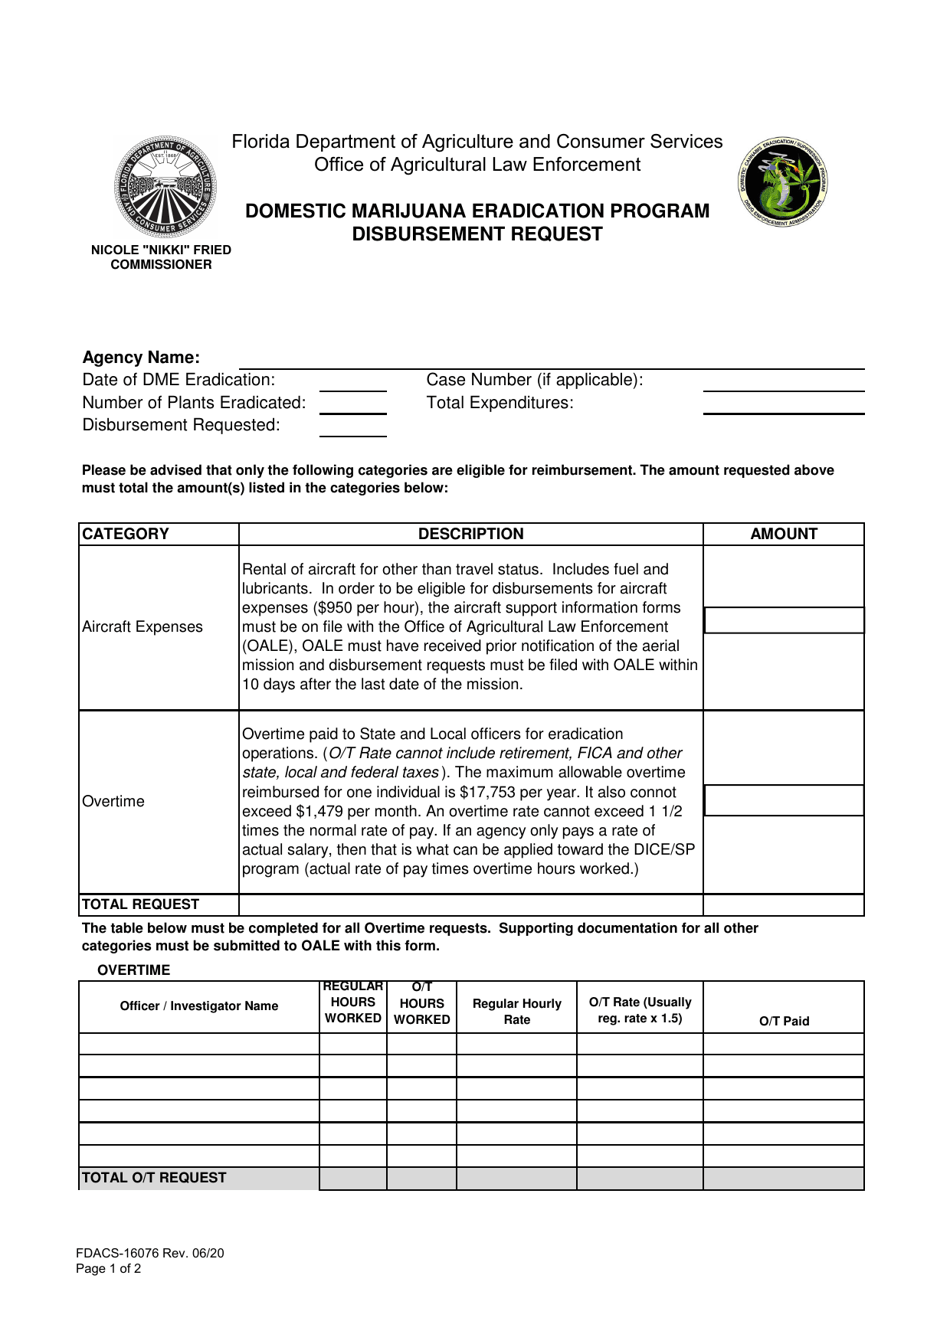 Form FDACS-16076 Domestic Marijuana Eradication Program Disbursement Request - Florida, Page 1